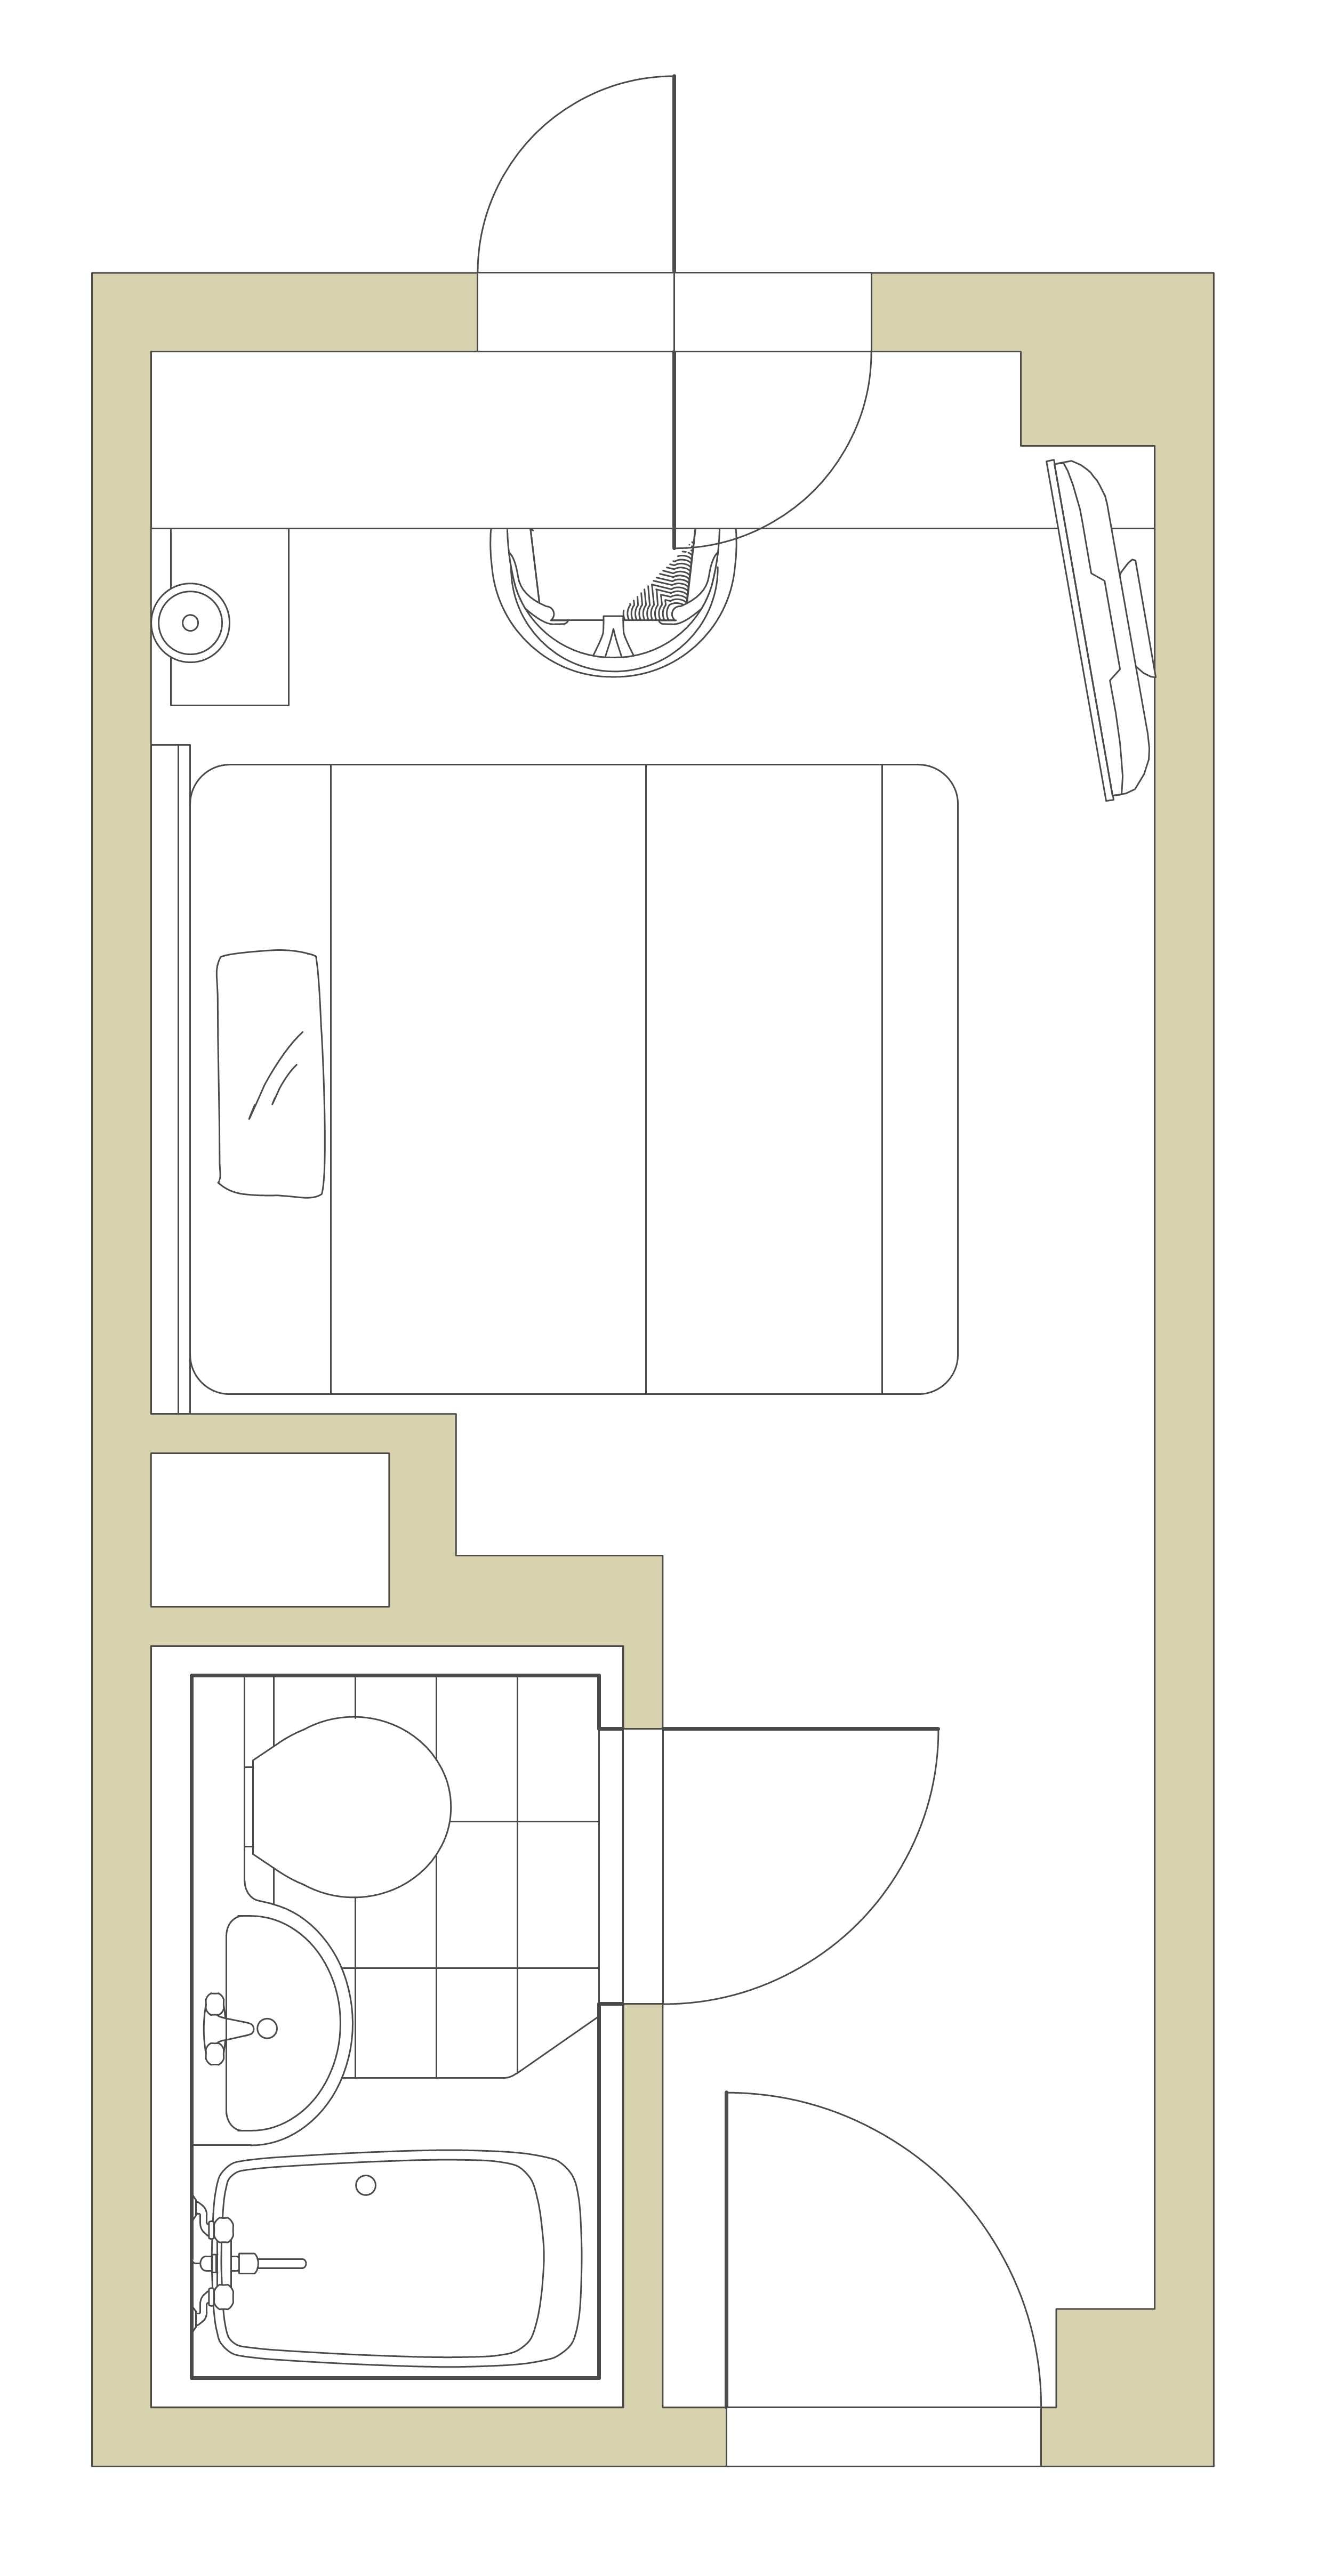 1 bedroom 15㎡ (160cm width queen bed) plan view